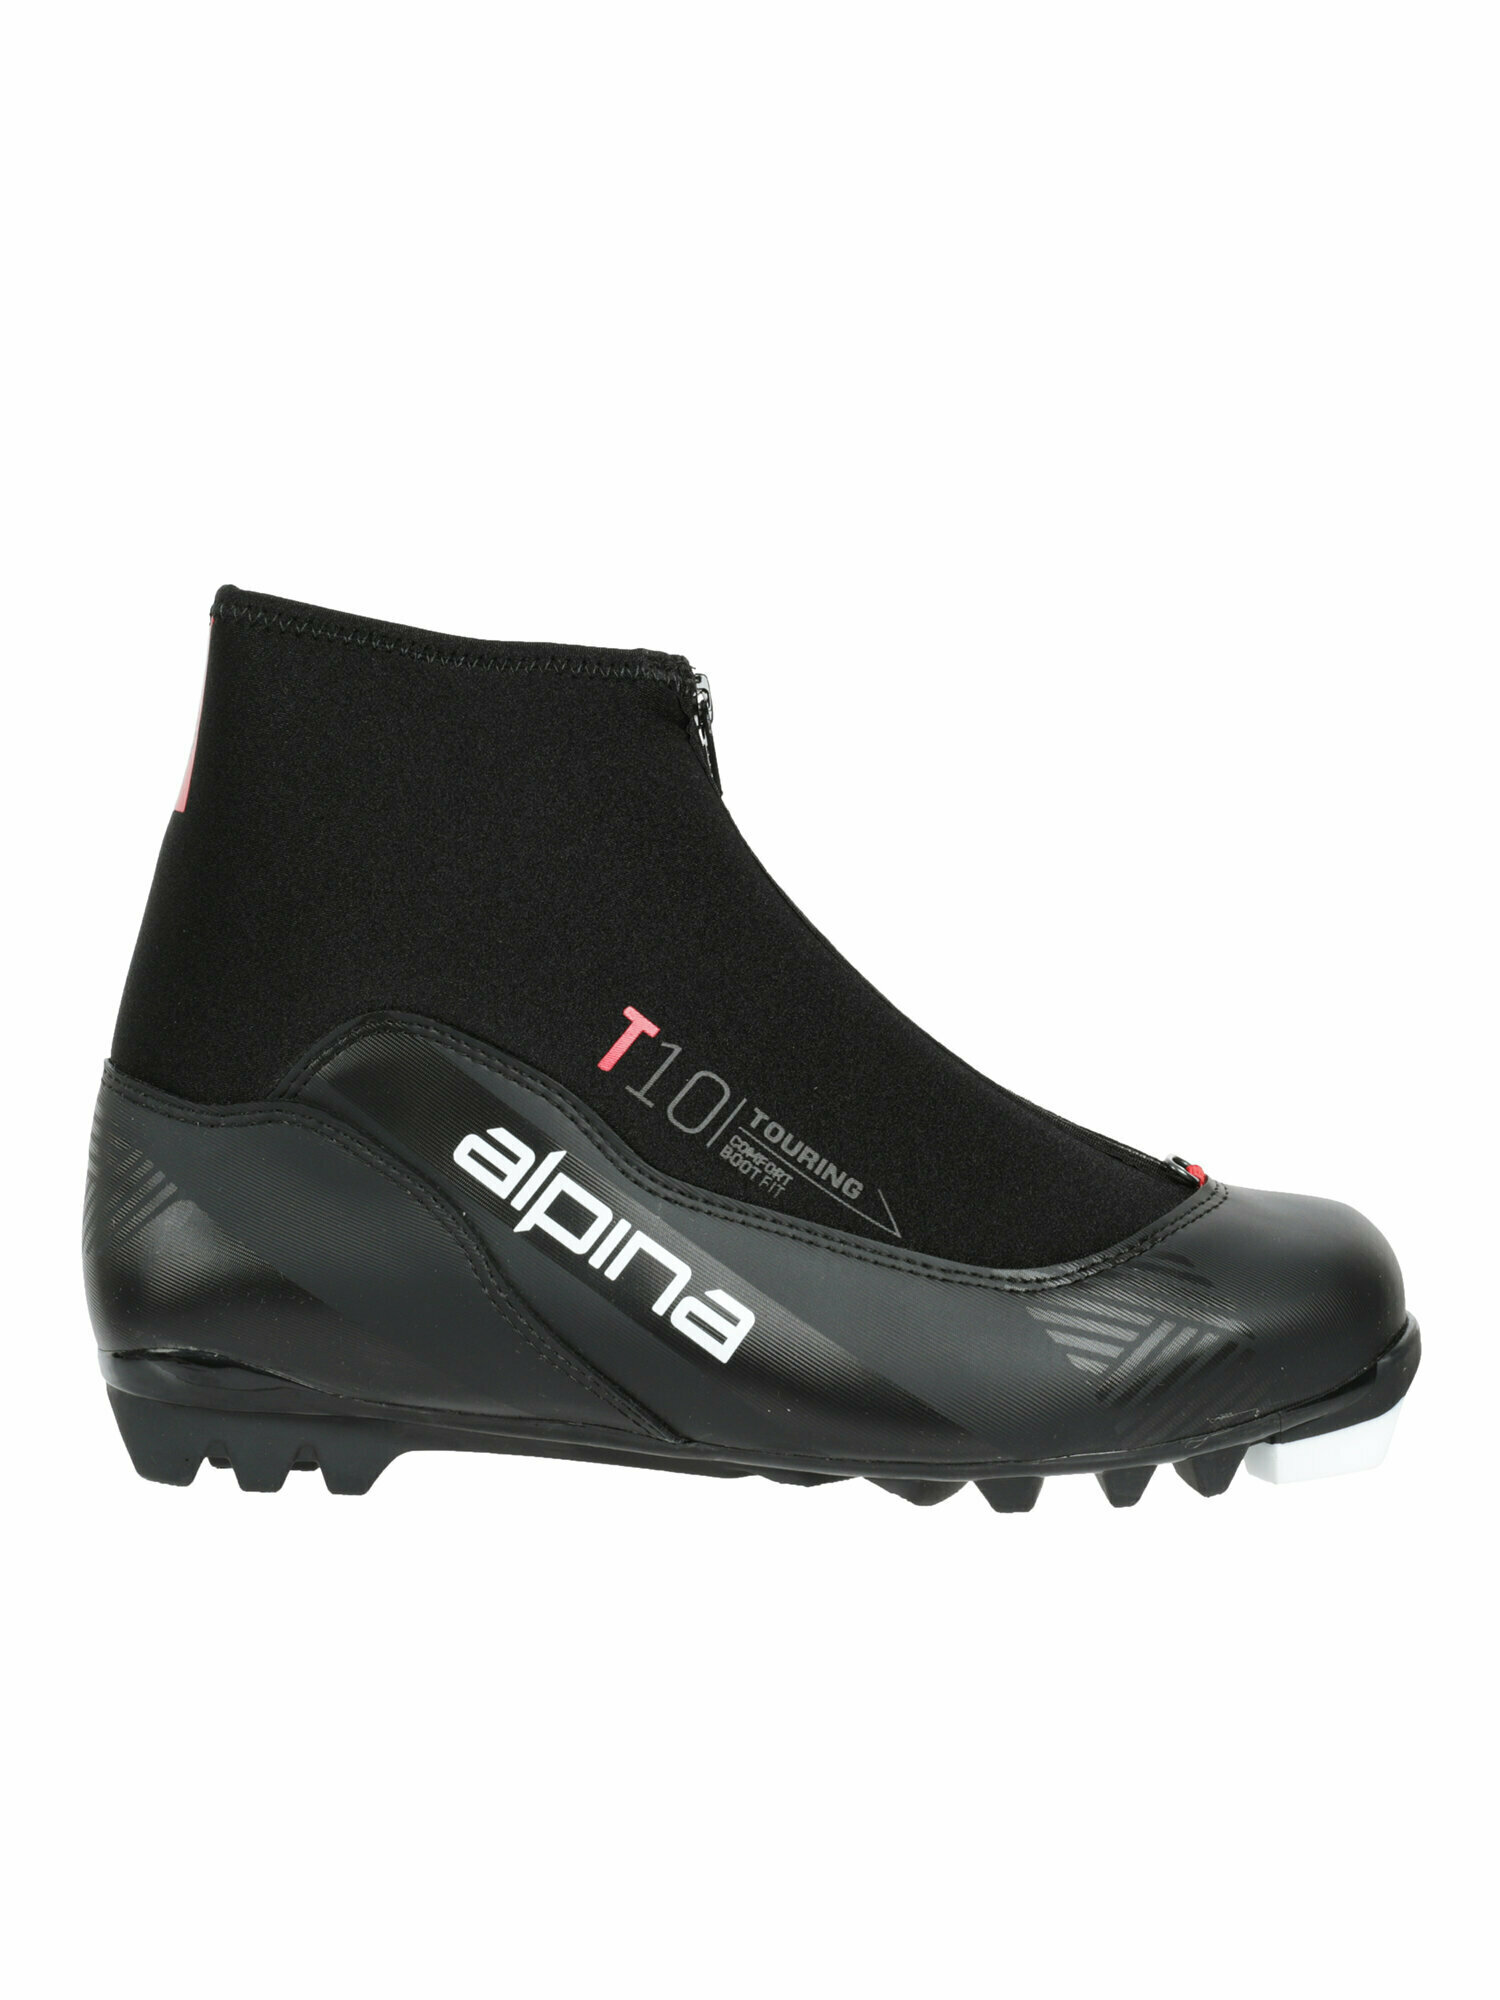 Лыжные ботинки Alpina. 2022-23 T 10 BLACK/RED (EUR:44)